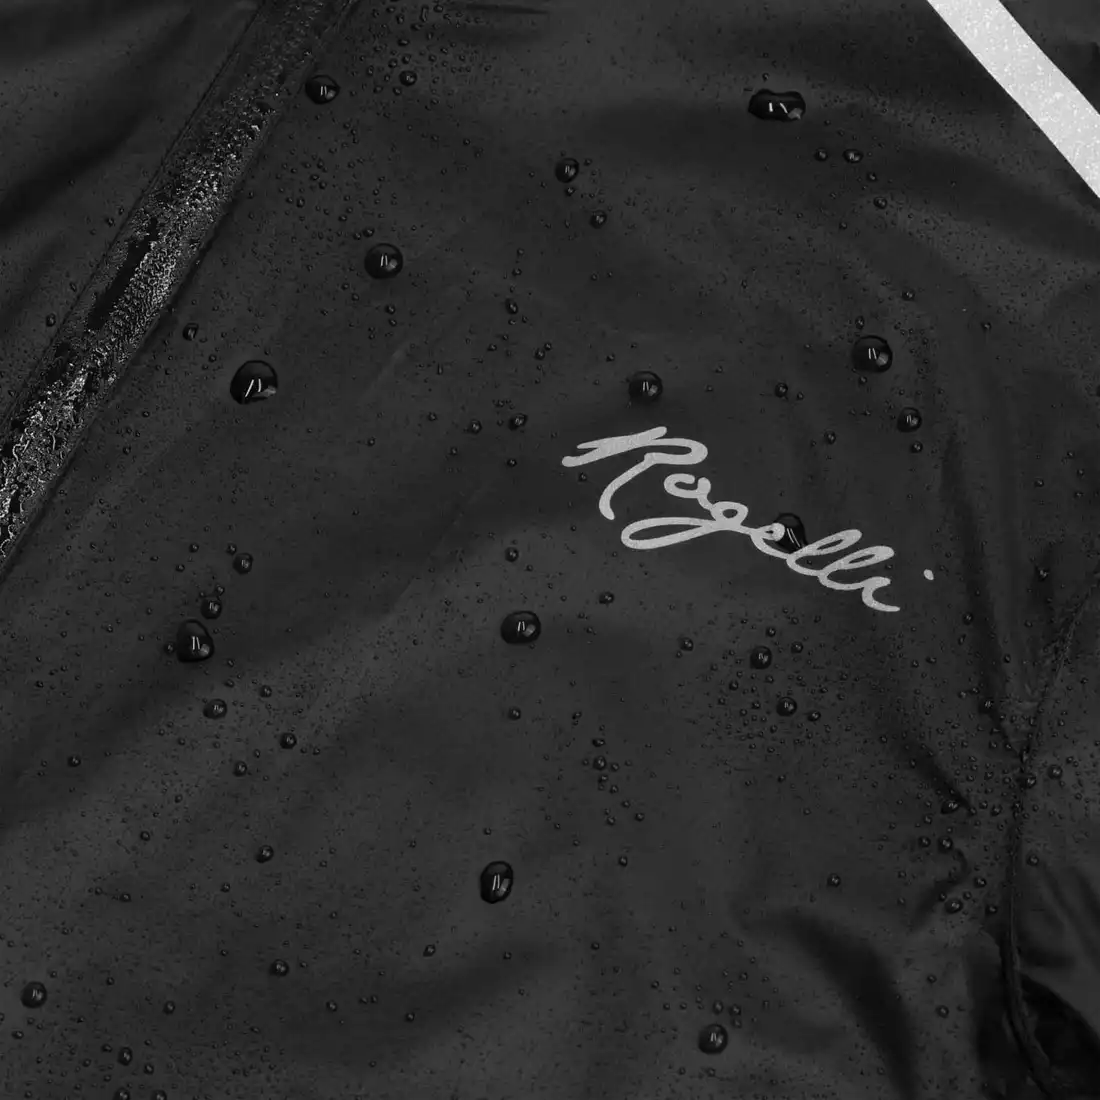 Rogelli ESSENTIAL dámská cyklistická bunda do deště, černá